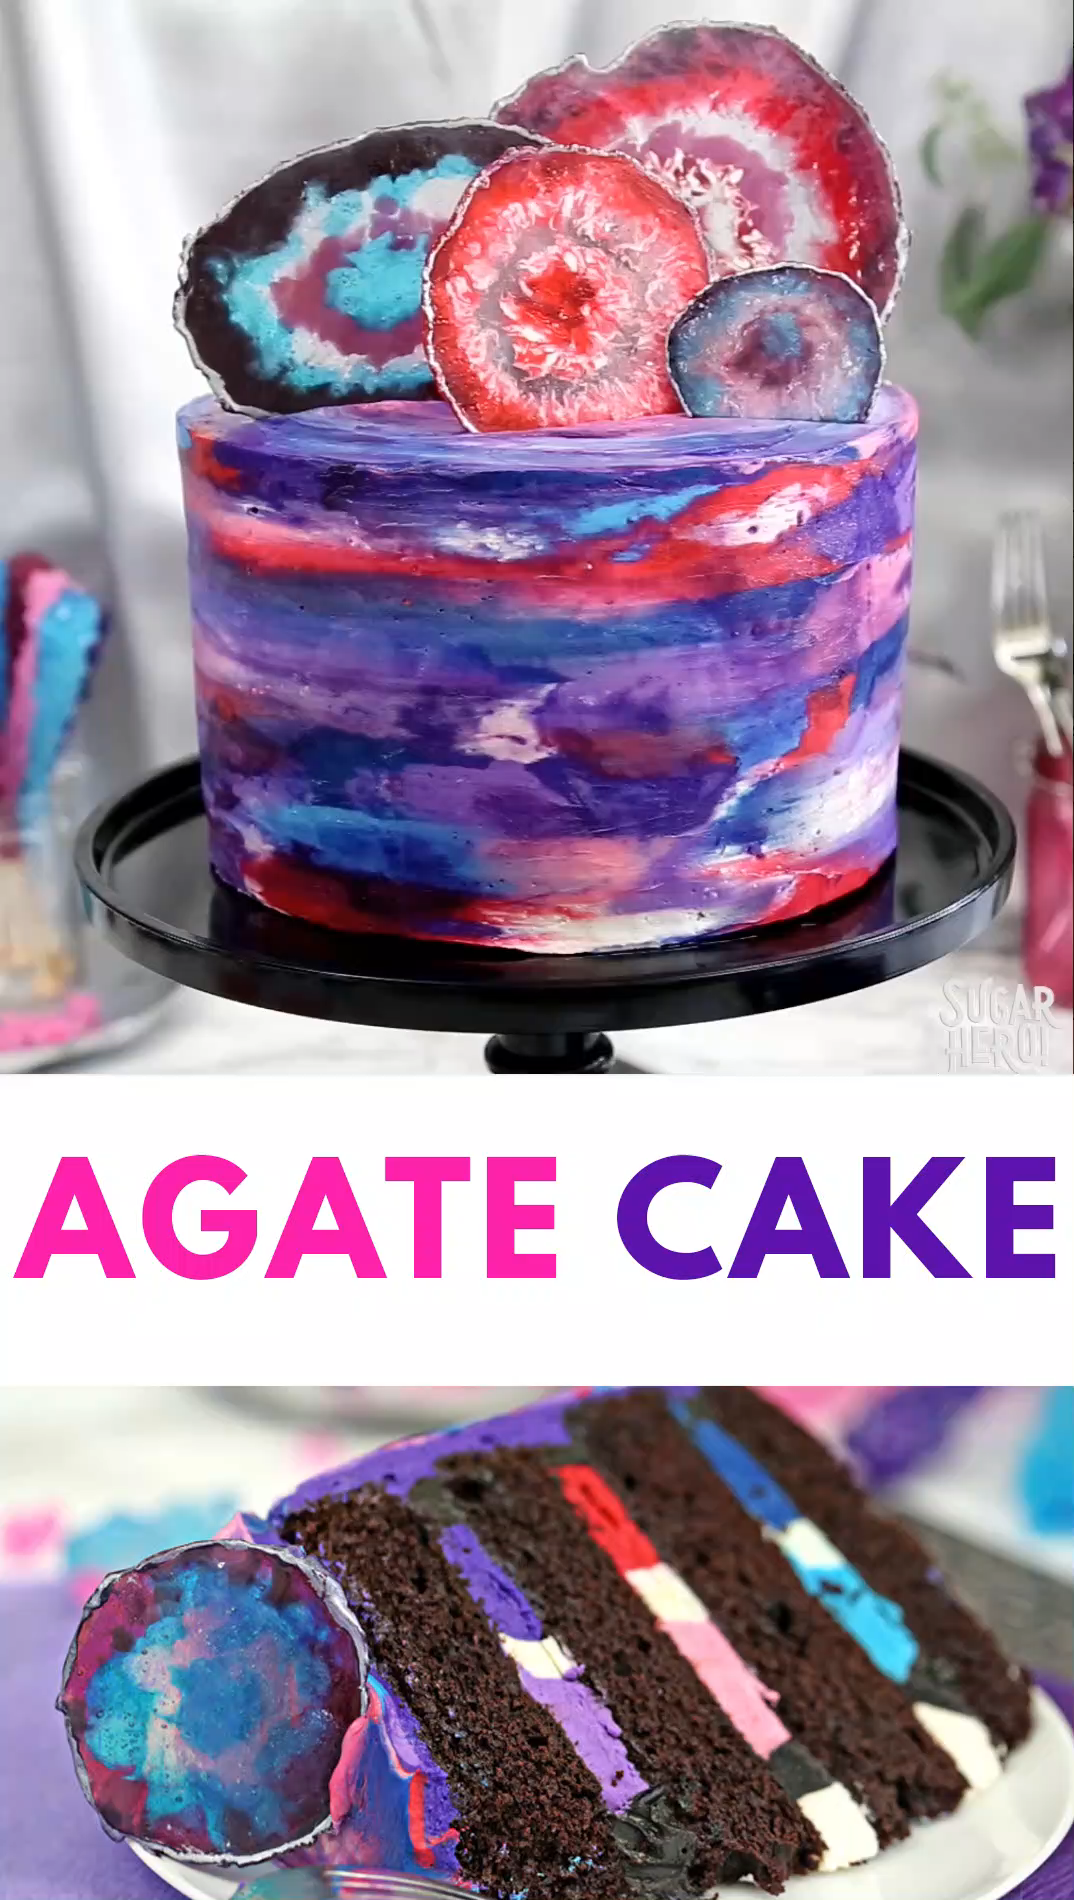 Agate Cake Video -   15 cake Art fun ideas